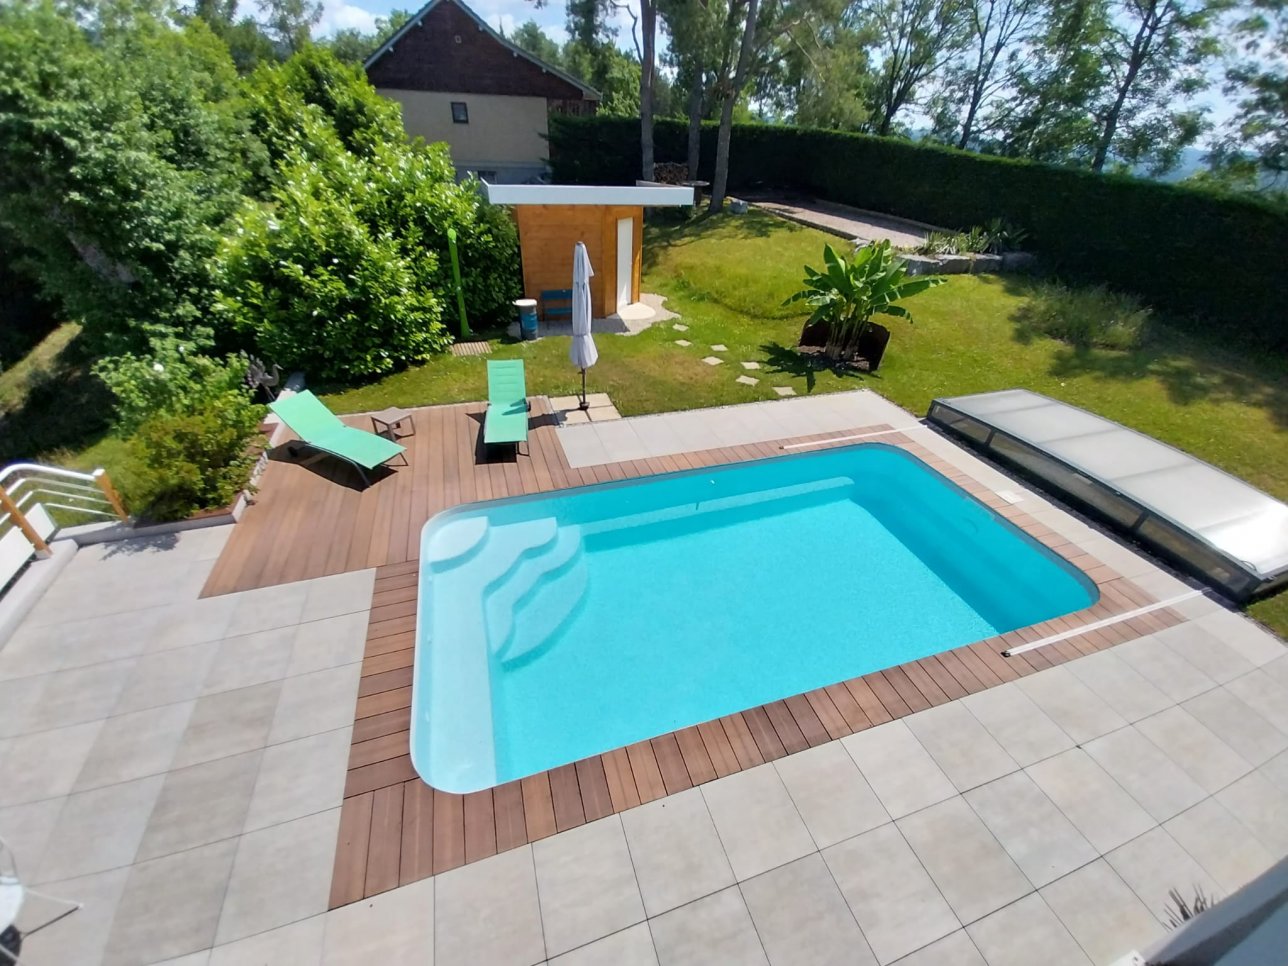 piscine de 7m par 3 50 vue de dessus - Photo piscine à coque